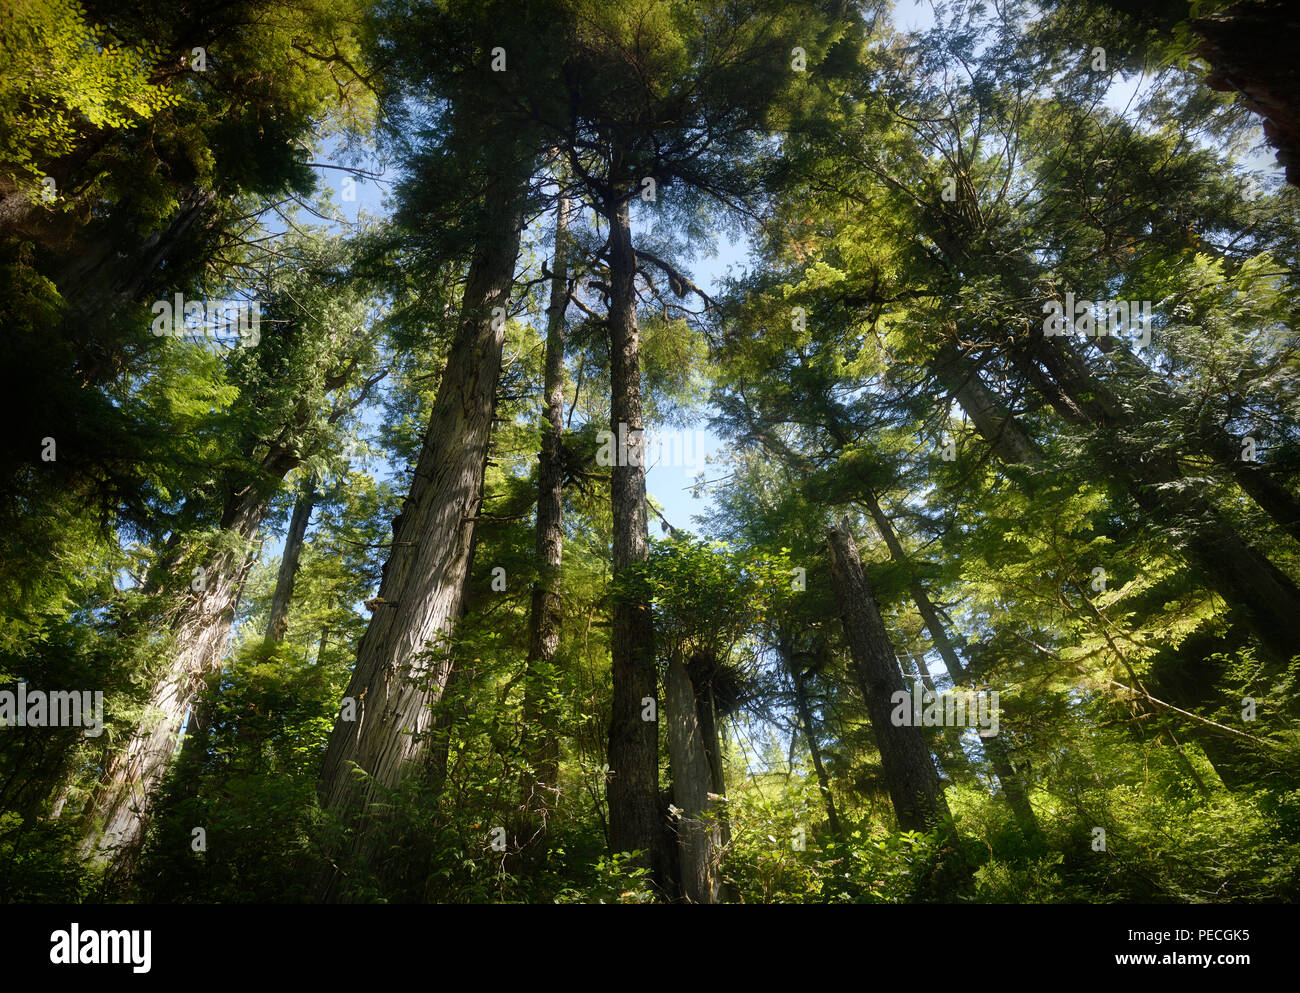 Hermoso Bosque altos árboles de abeto Douglas cubriendo el cielo en la Reserva del Parque Nacional de Pacific Rim en Tofino, Isla de Vancouver, BC, Canadá. Foto de stock